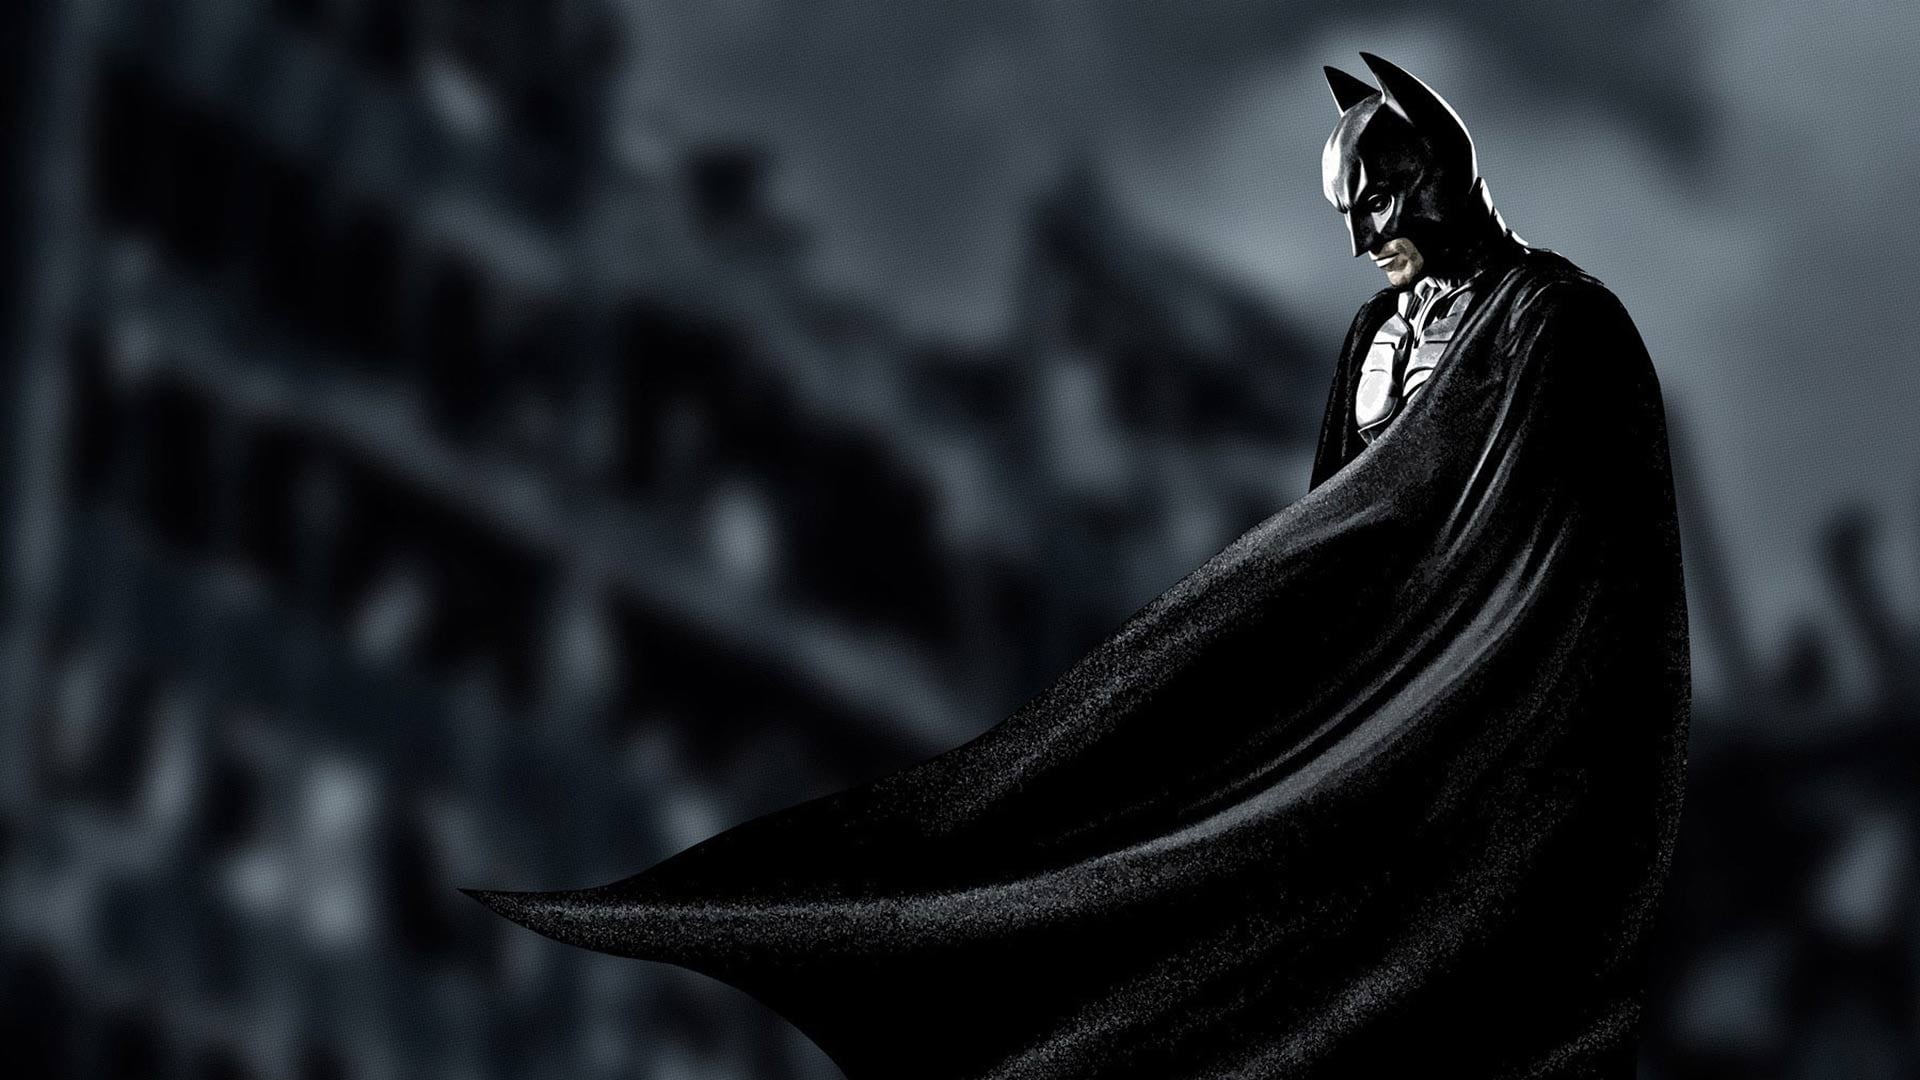 Free download | HD wallpaper: Batman, movies, DC Comics, clothing